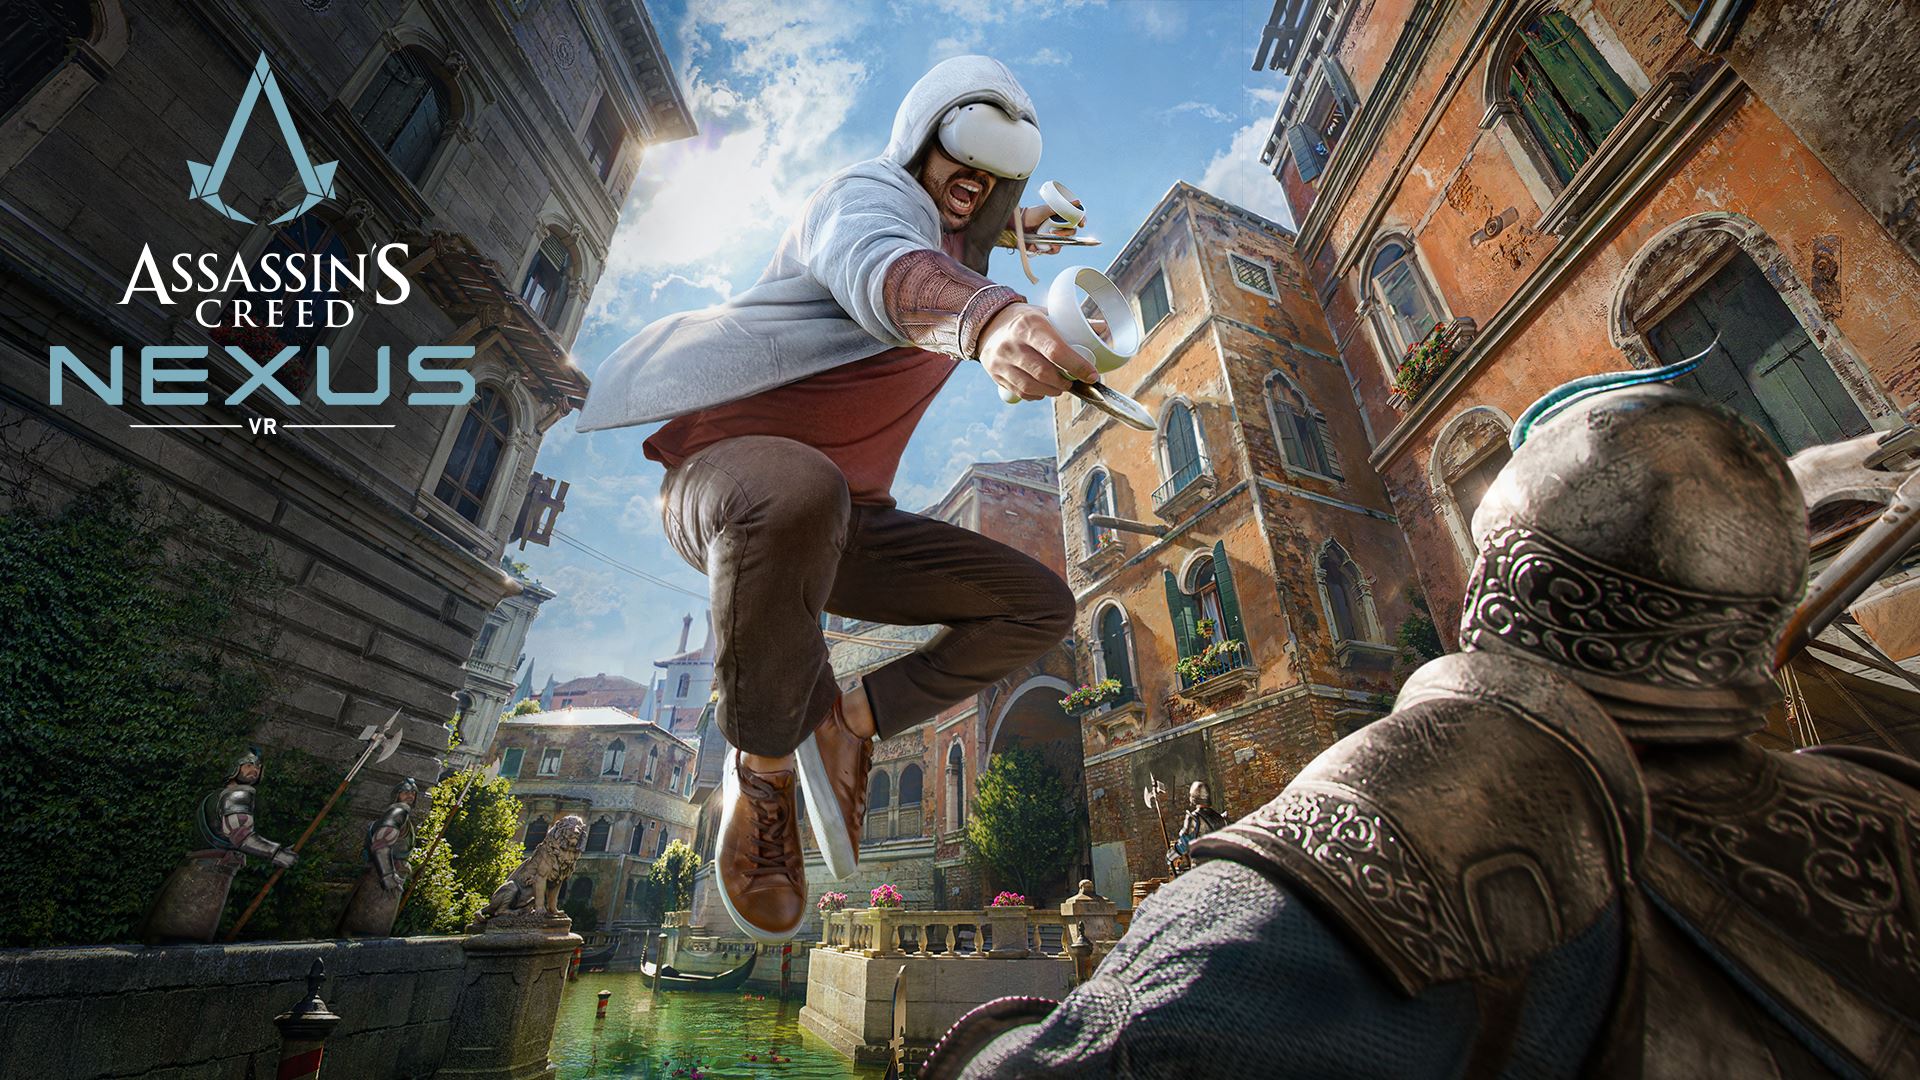 ก้าวเข้าสู่โลกของ Assassin’s Creed® Nexus VR พร้อมตัวอย่างใหม่เผยภาพรวมการเล่น